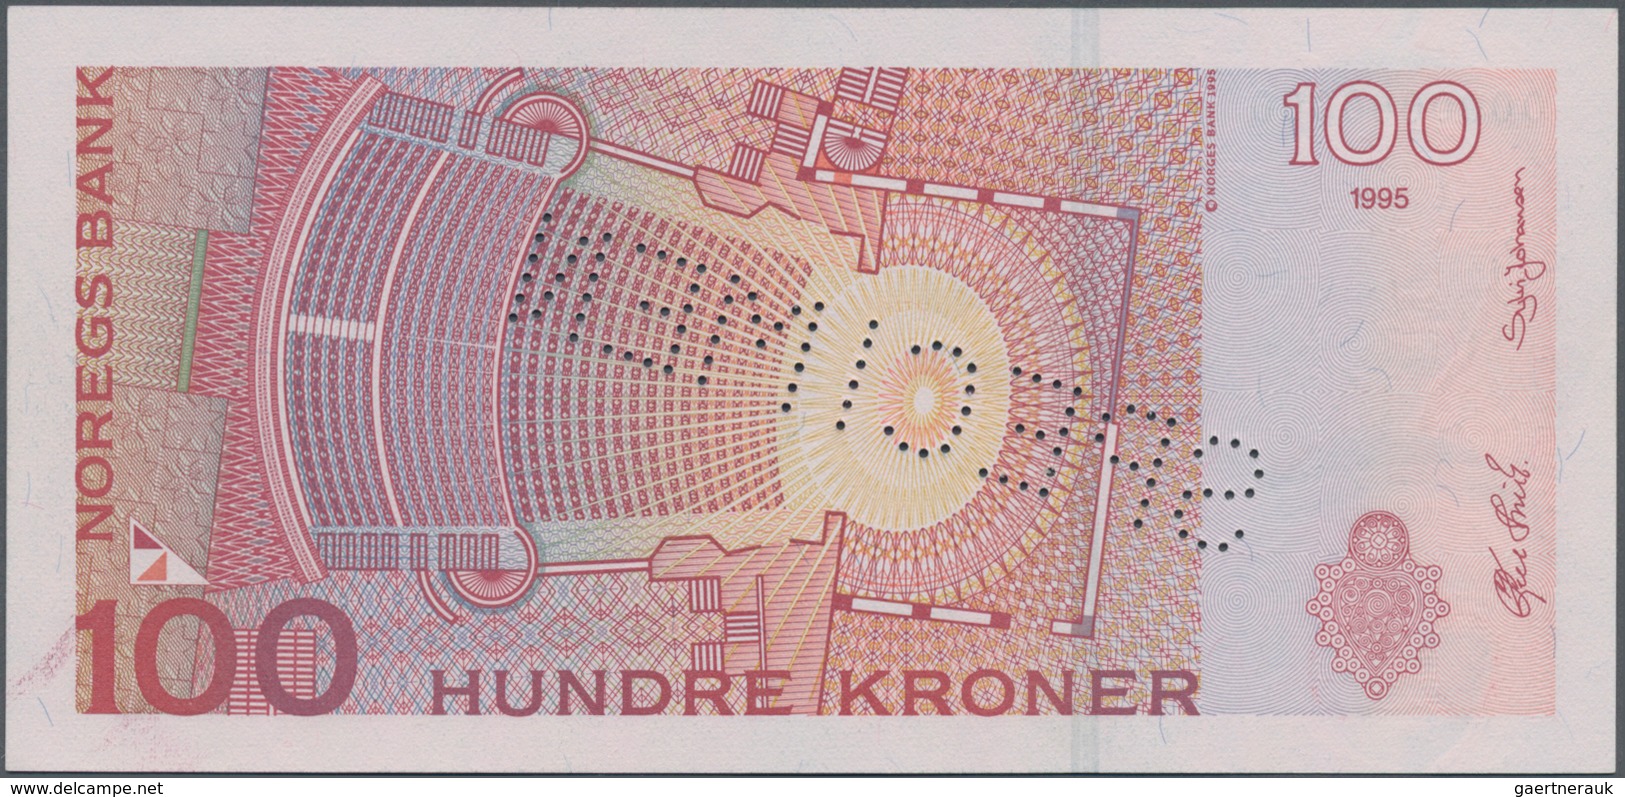 Norway / Norwegen: 100 Koner 1995 SPECIMEN, P.47s In Perfect UNC Condition. Highly Rare! - Noorwegen